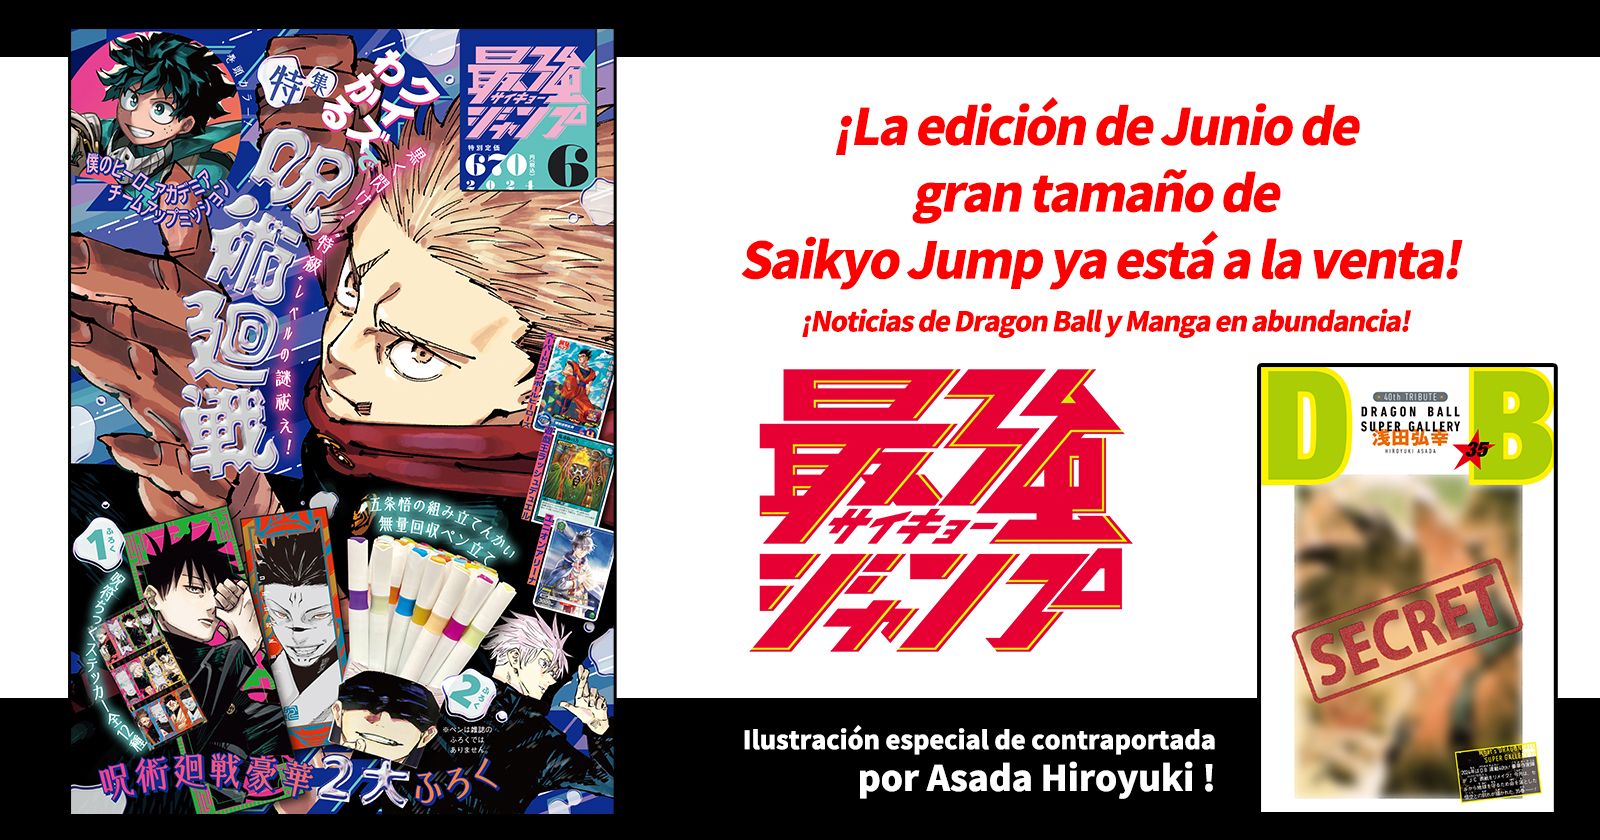 ¡Dragon Ball Manga y golosinas en abundancia! ¡La edición de mayo de gran tamaño de Saikyo Jump ya está a la venta!